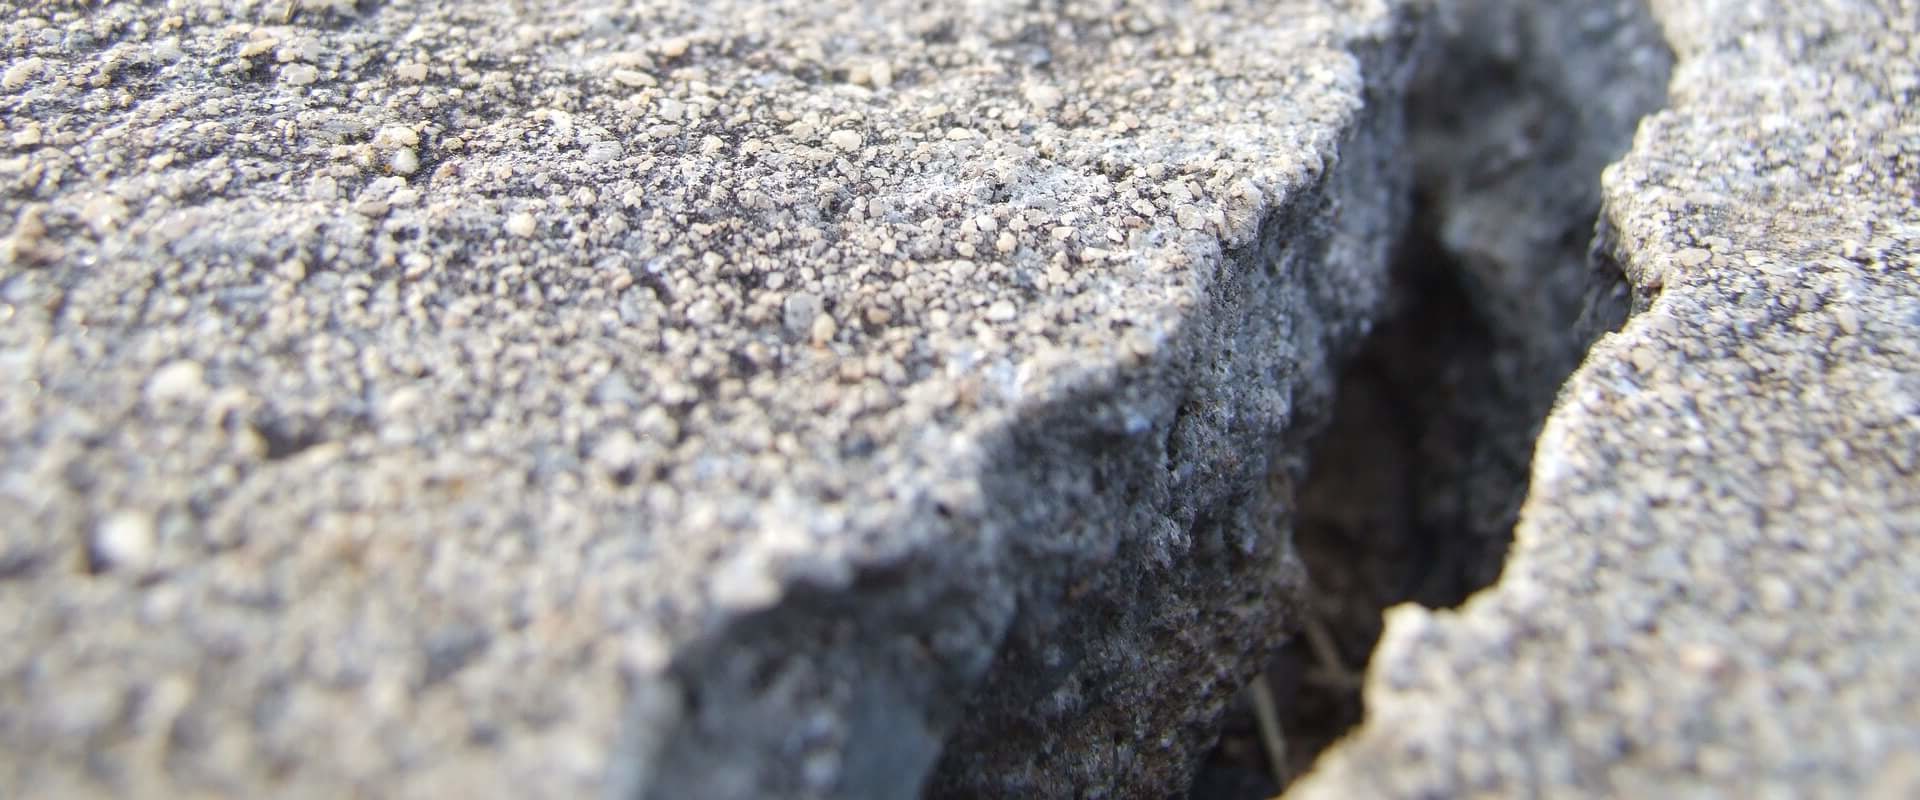 How to repair cracks in concrete?